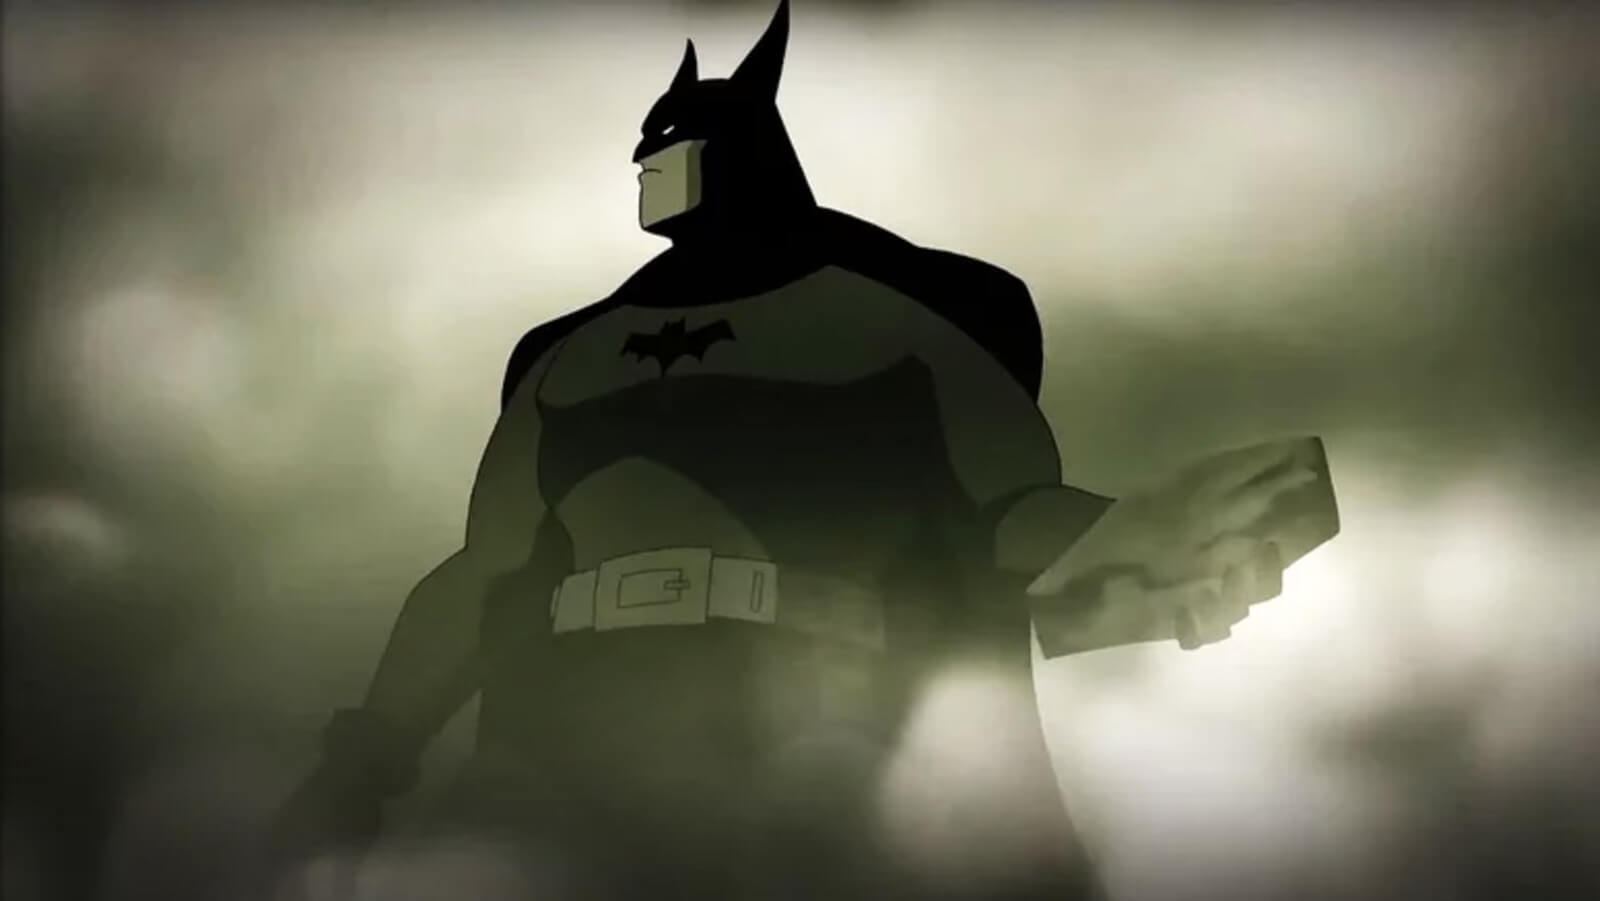 Batman Caped Crusader has been canceled at HBO Max